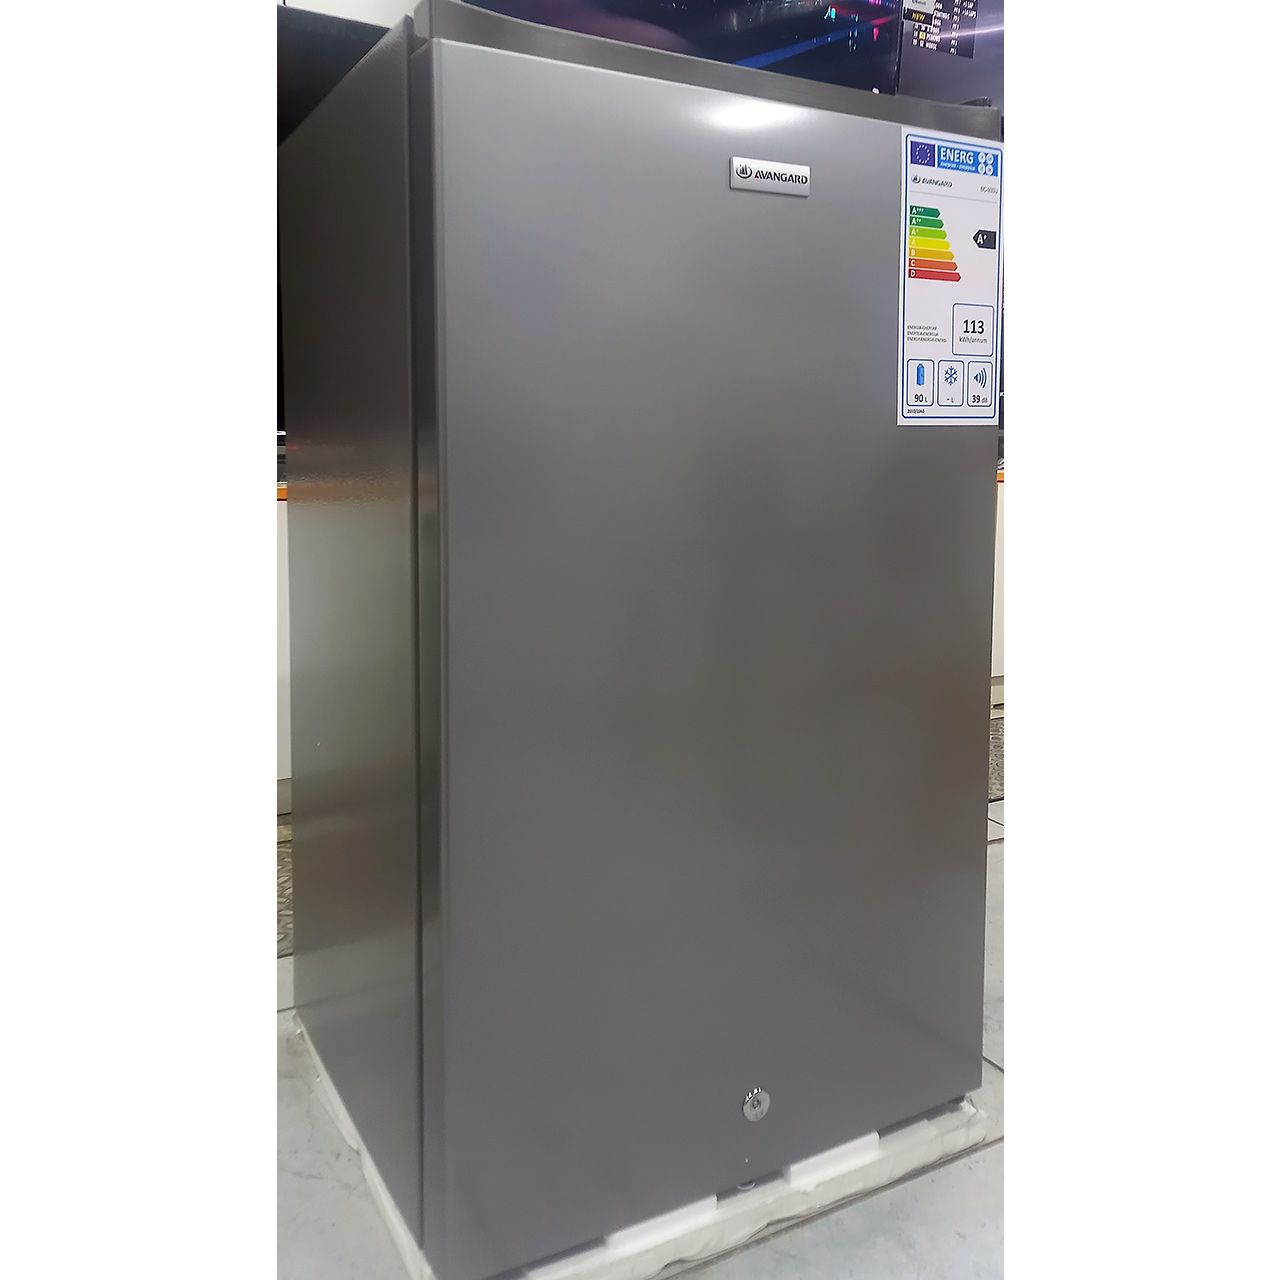 Холодильник однокамерный Avangard 90 литров